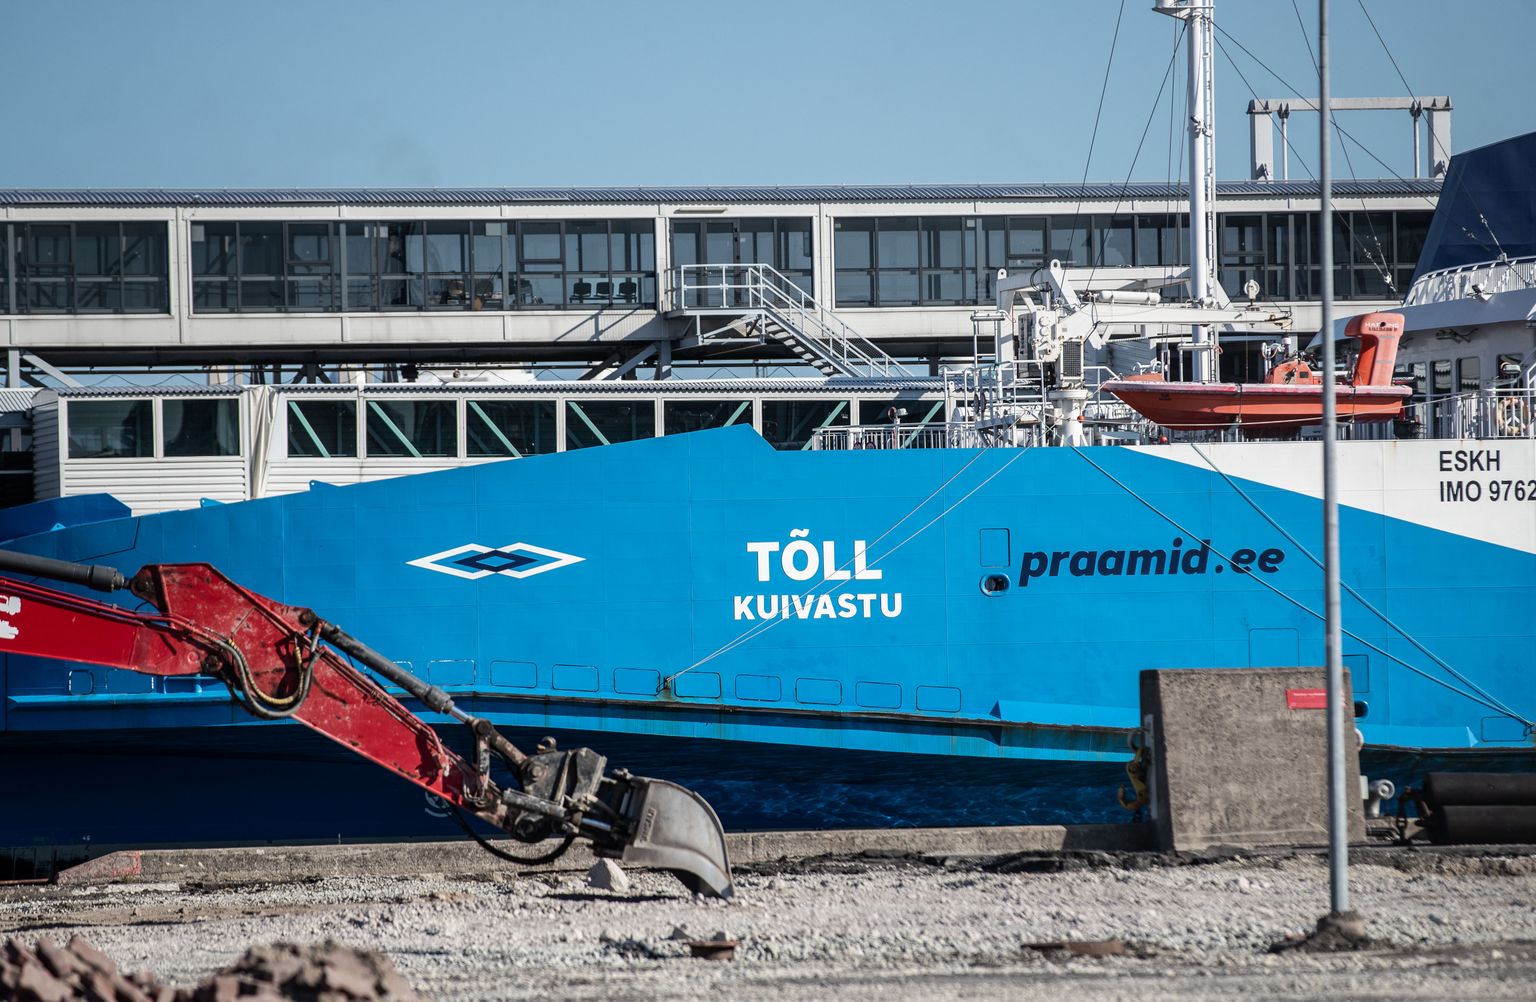 Parvlaev Tõll Tallinna Vanasadamas merekatsetustel pärast Kuivastus juhtunud avariid ning BLRT dokis läbitud remonti. Tõll on esimene laev Eestis, millel katsetati veoseadmetele energia saamiseks akude ja diiselgeneraatorite hübriidlahendust.